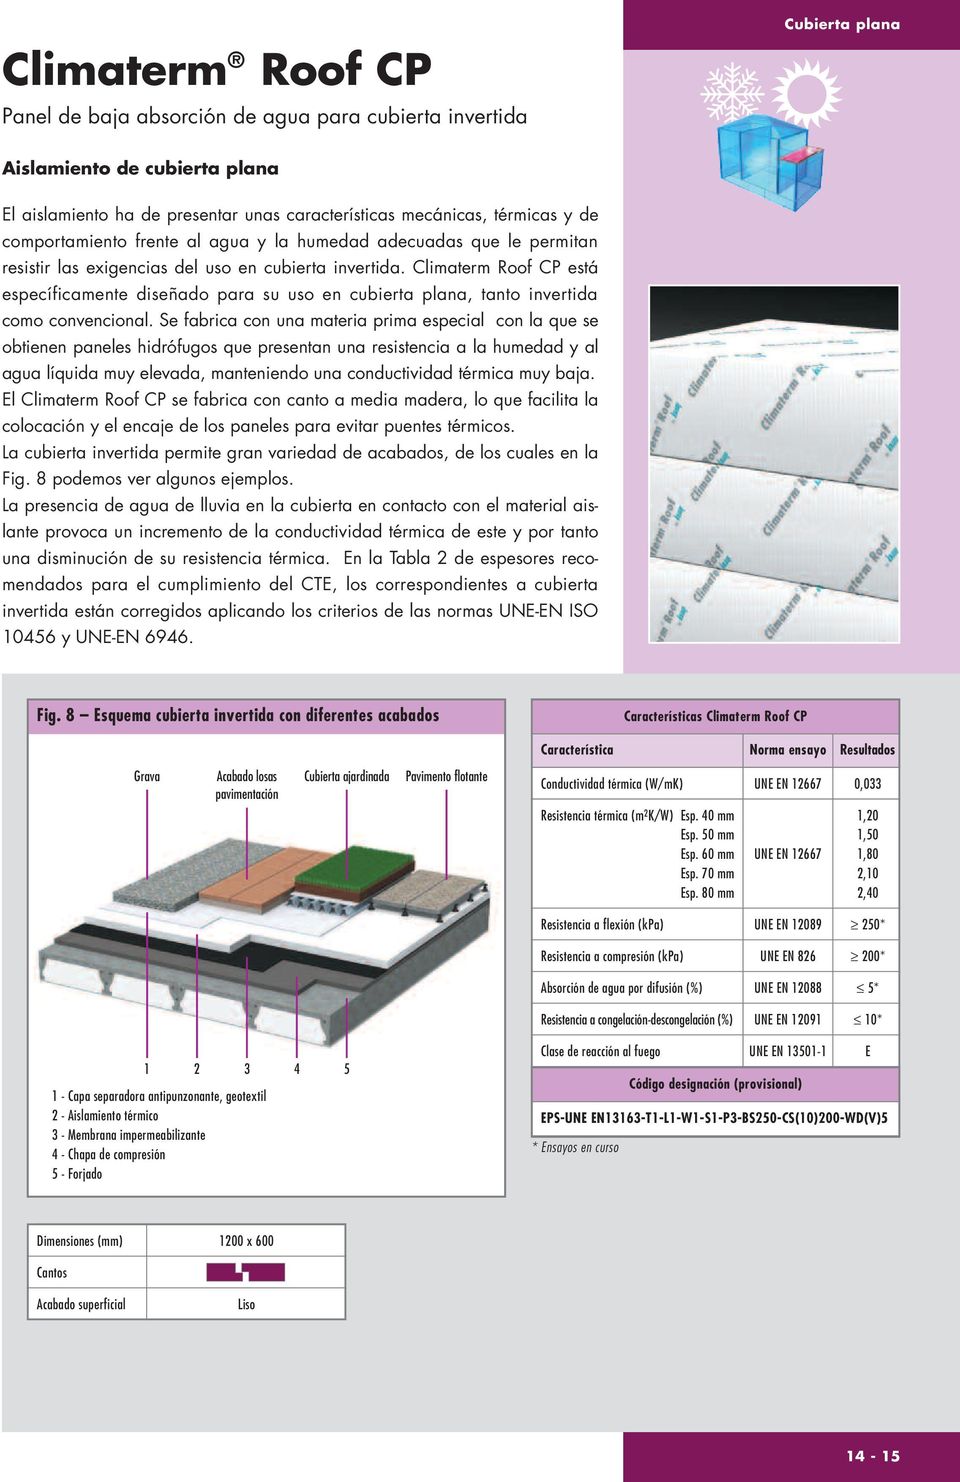 Climaterm Roof CP está específicamente diseñado para su uso en cubierta plana, tanto invertida como convencional.